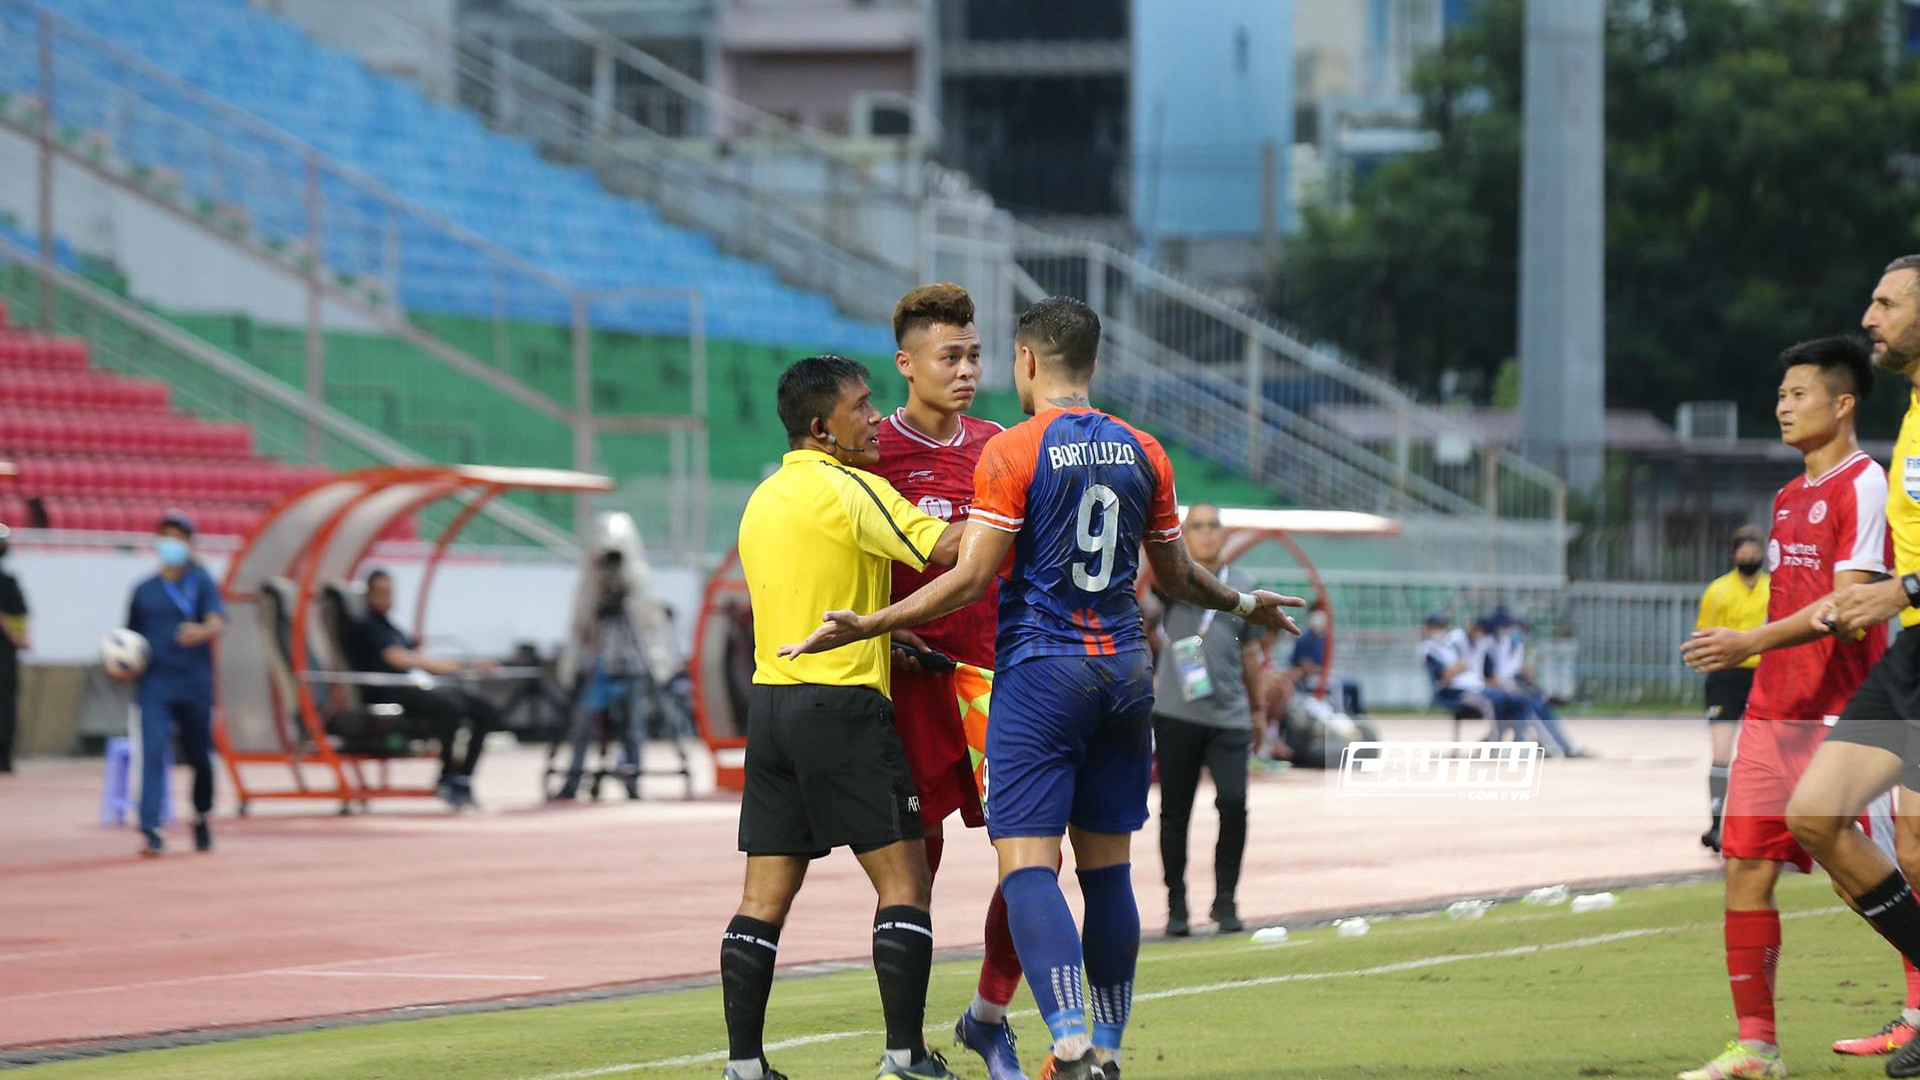 Bóng đá Việt Nam - Dính chấn thương nặng, cựu sao U23 Việt Nam rời sân bằng xe cứu thương (Hình 5).